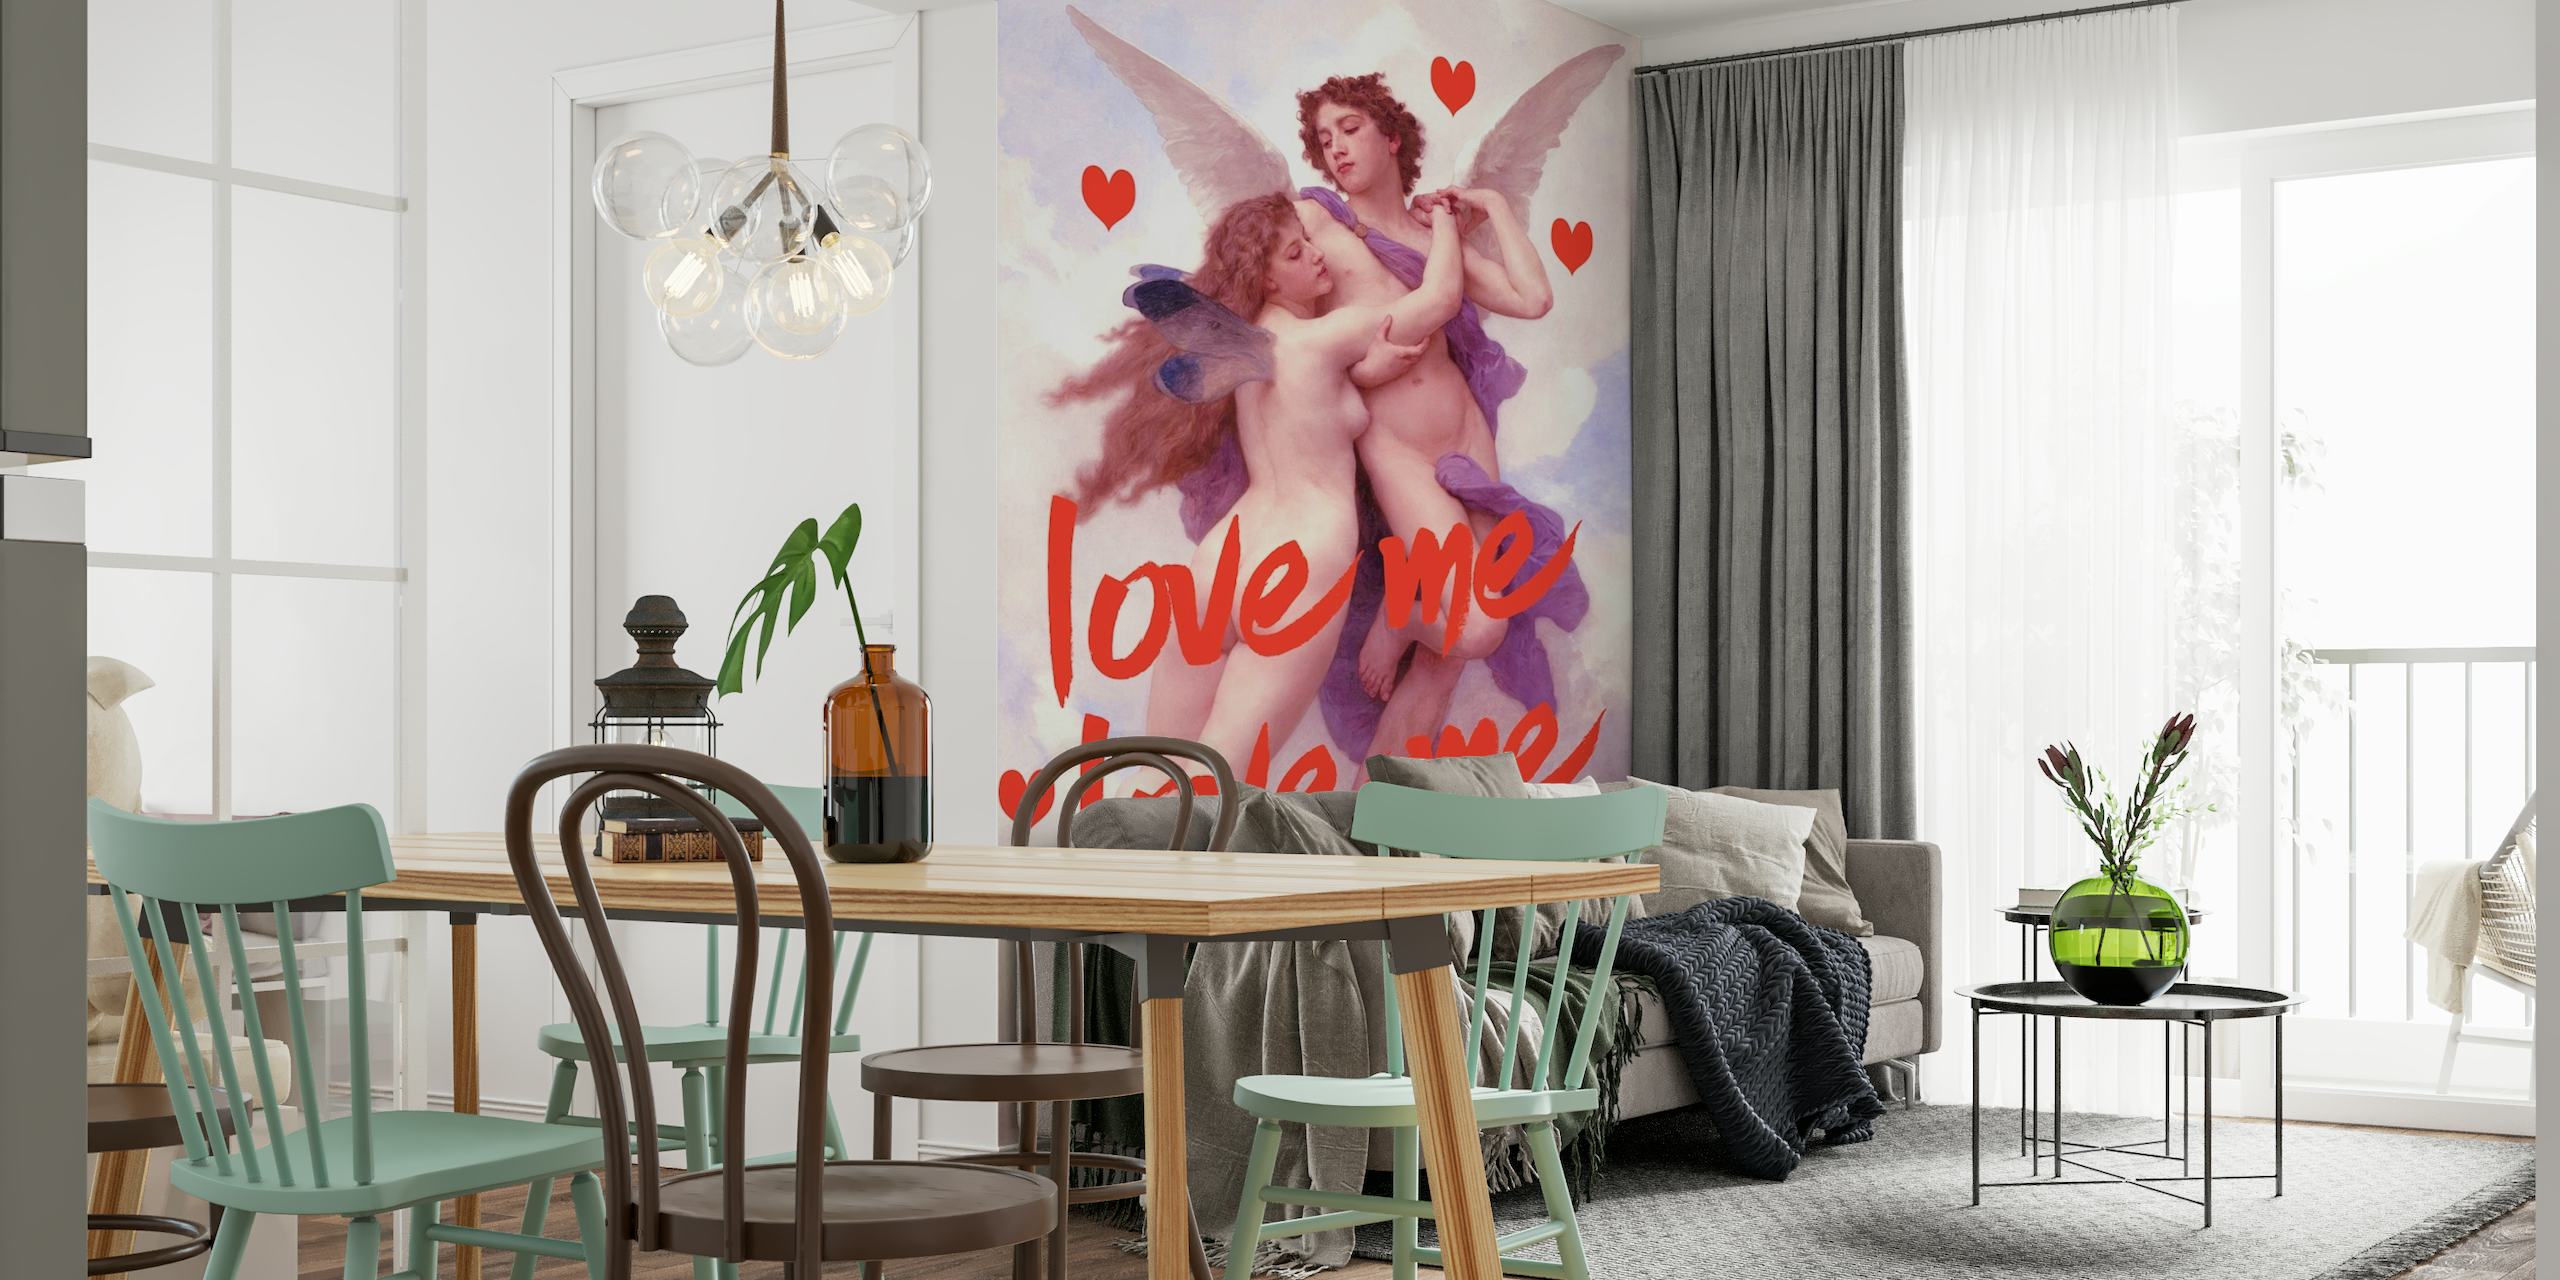 Romantische Love Angel muurschildering met engelen en harten